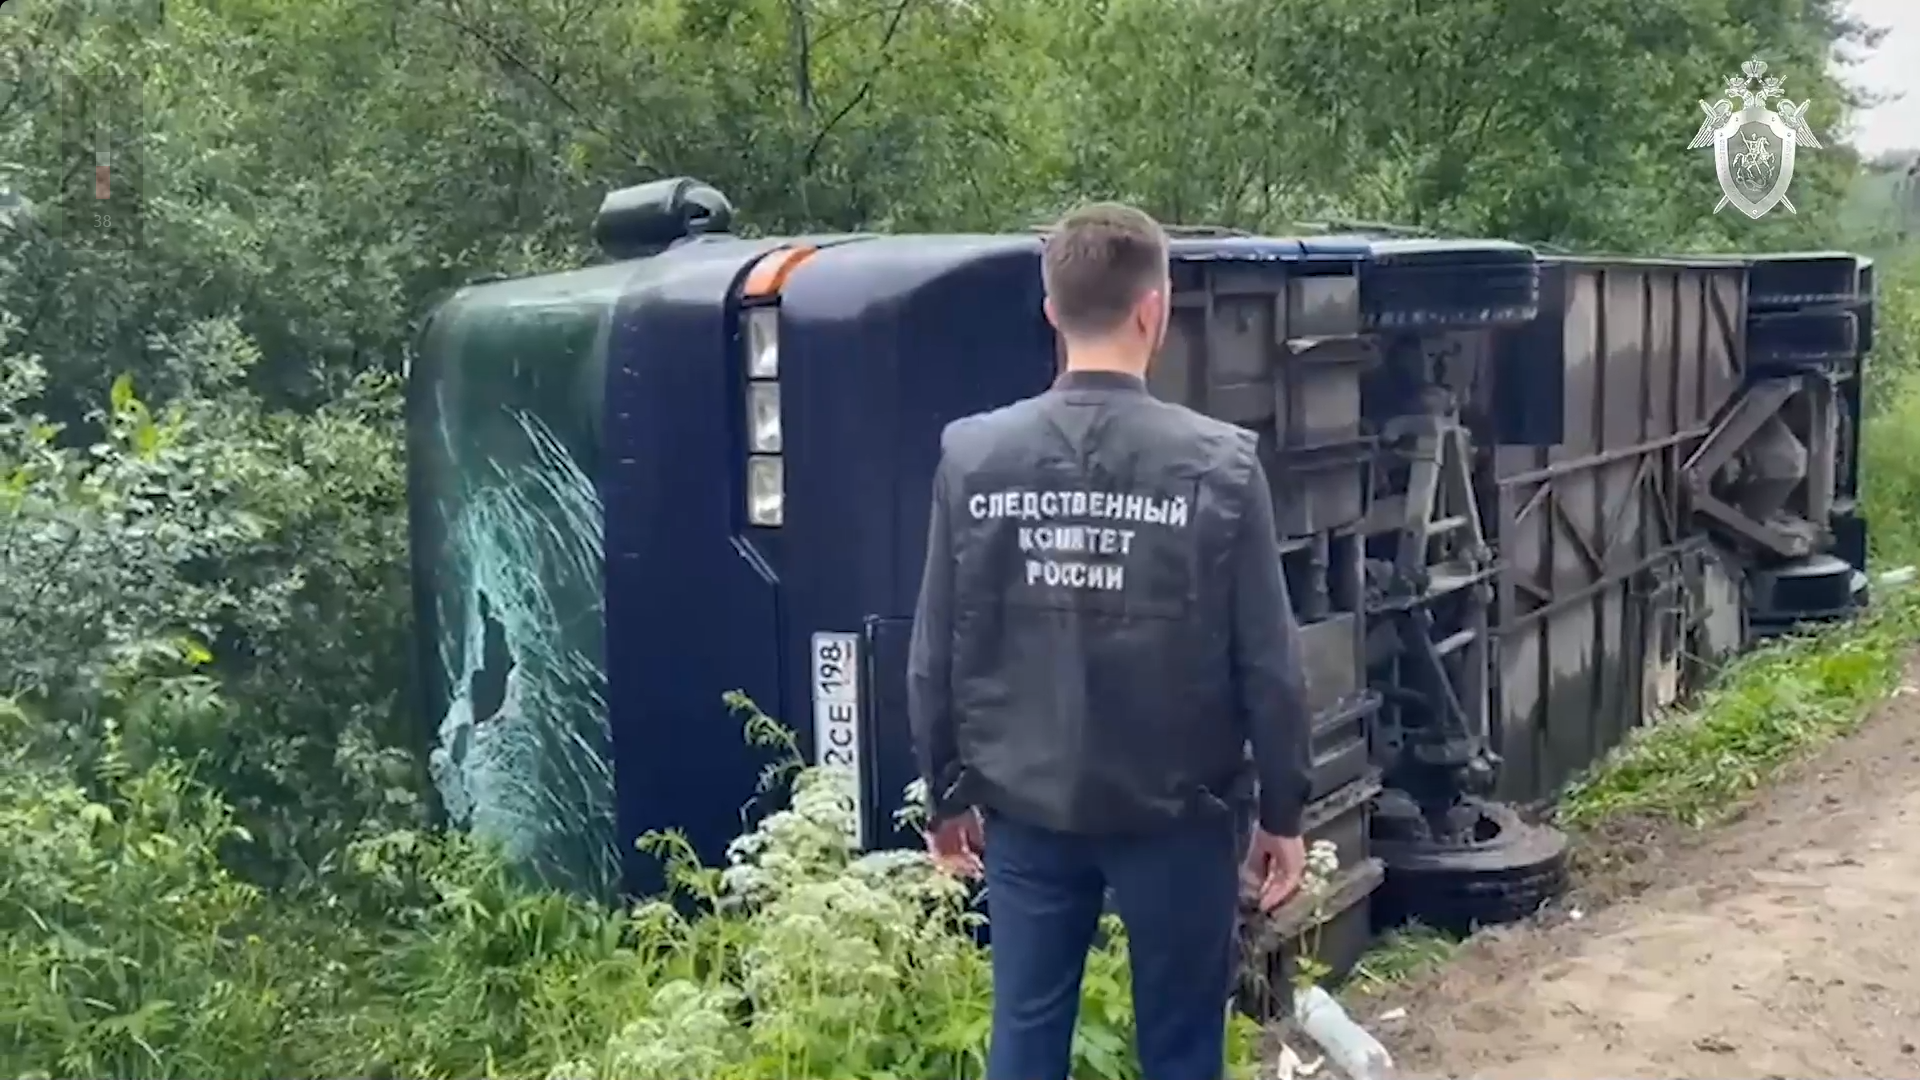 Нижегородец пострадал в аварии с туристическим автобусом в Карелии